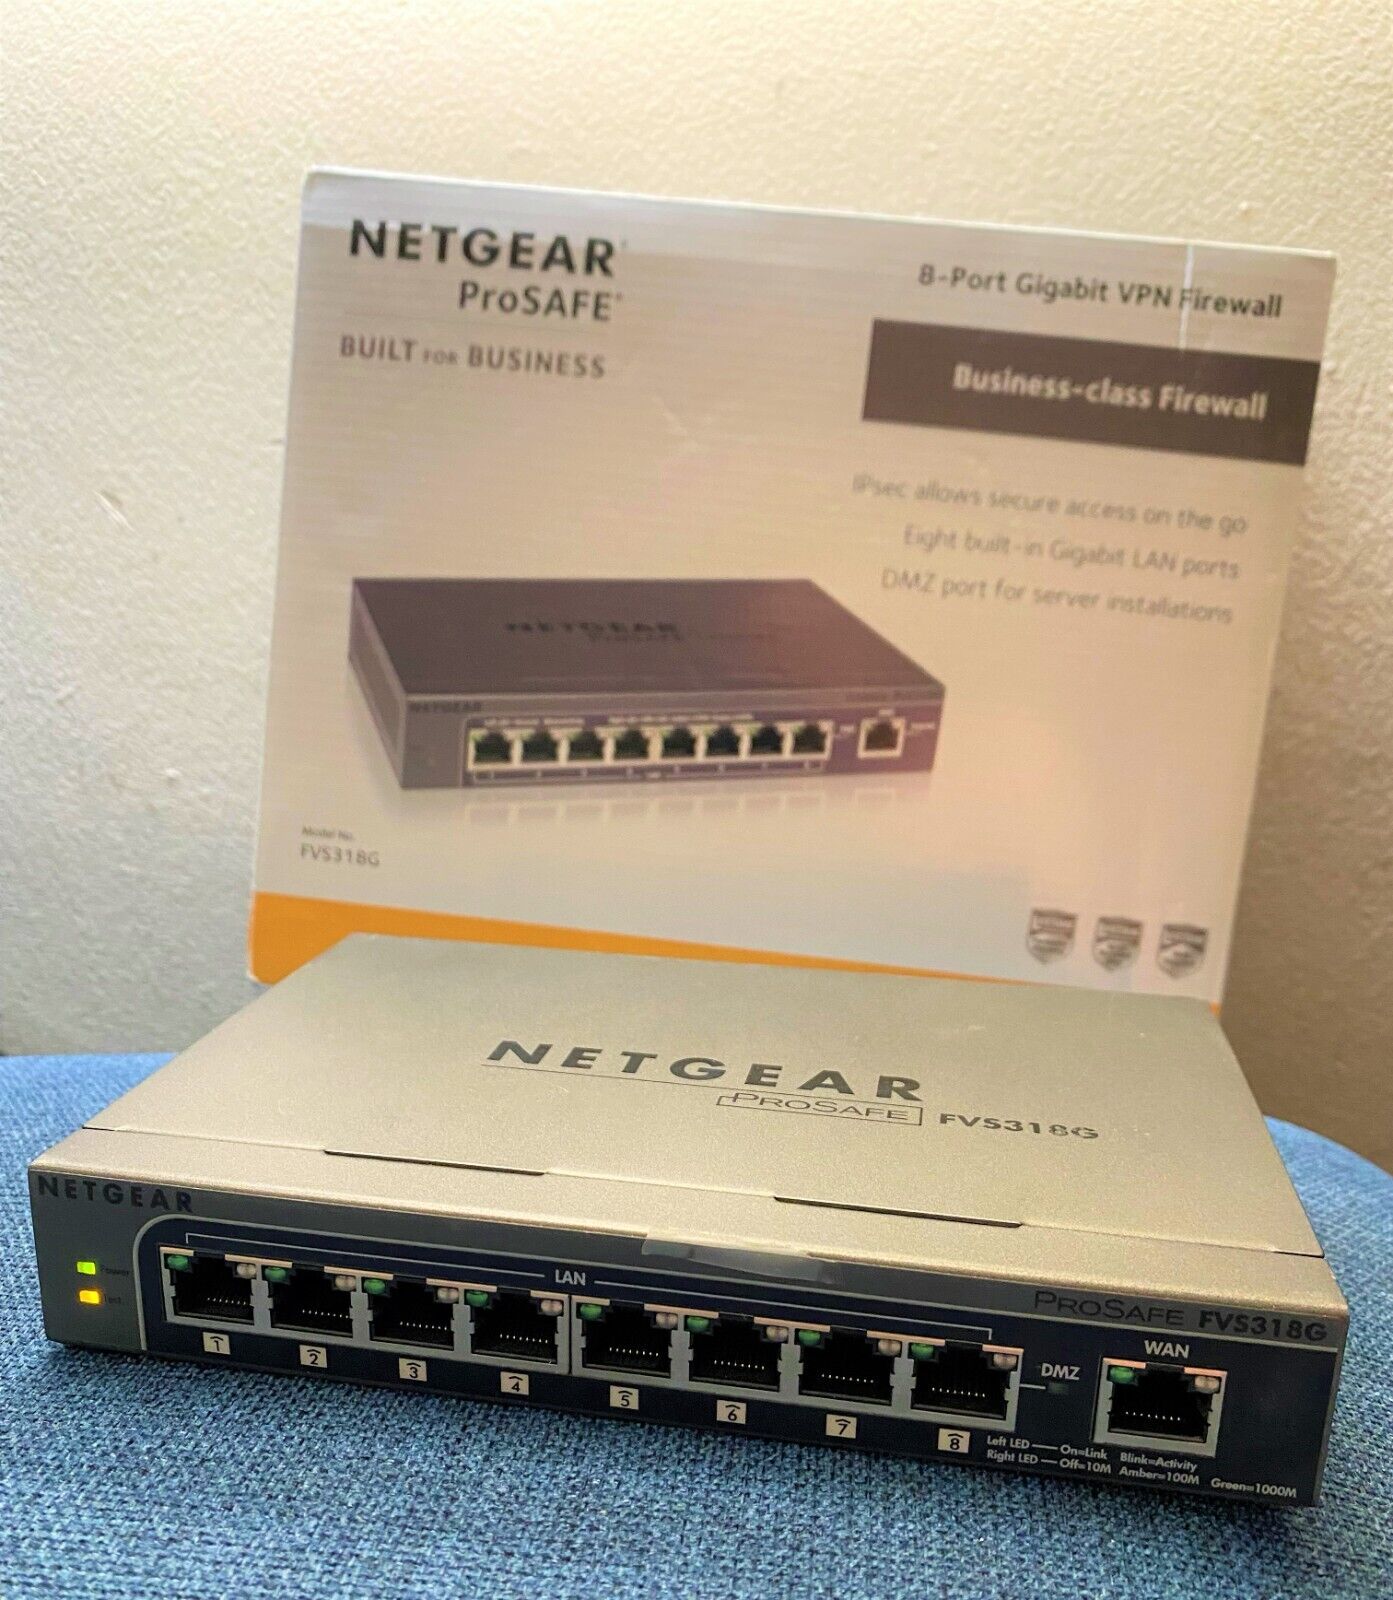 Netgear FVS318G ProSafe 8-Port Gigabit VPN Firewall